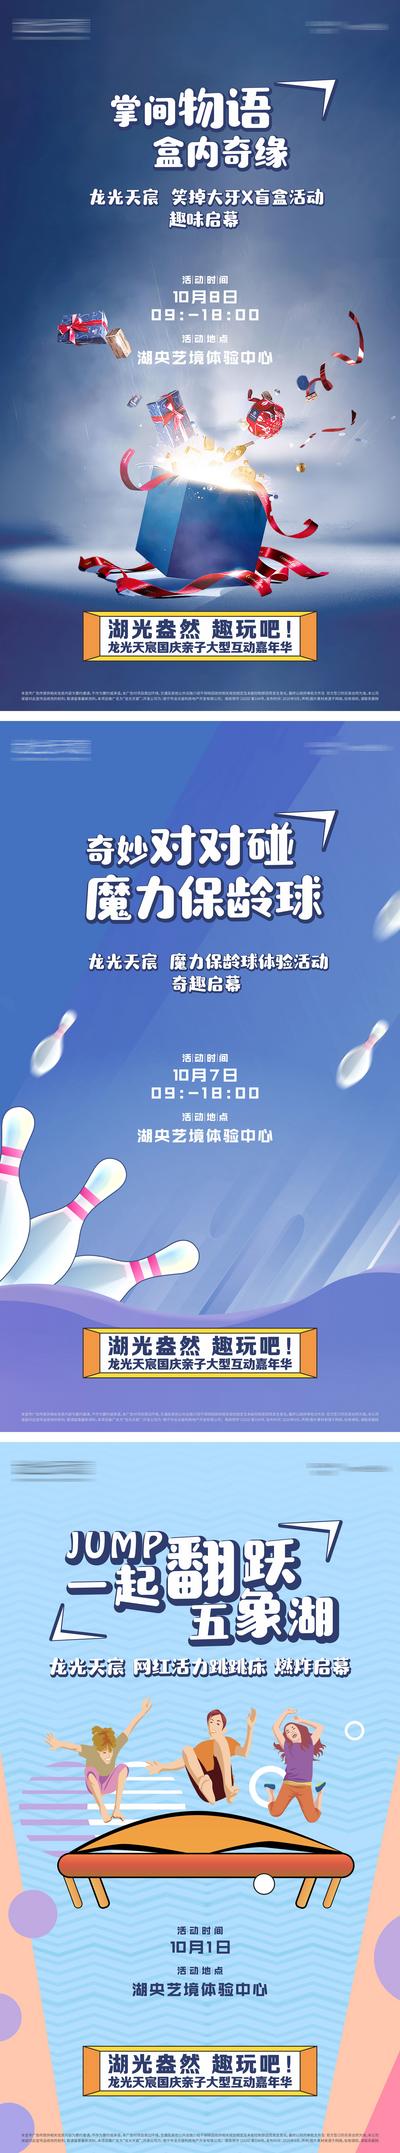 南门网 海报 公历节日 国庆 活动 插画 保龄球 蹦床 礼品盒